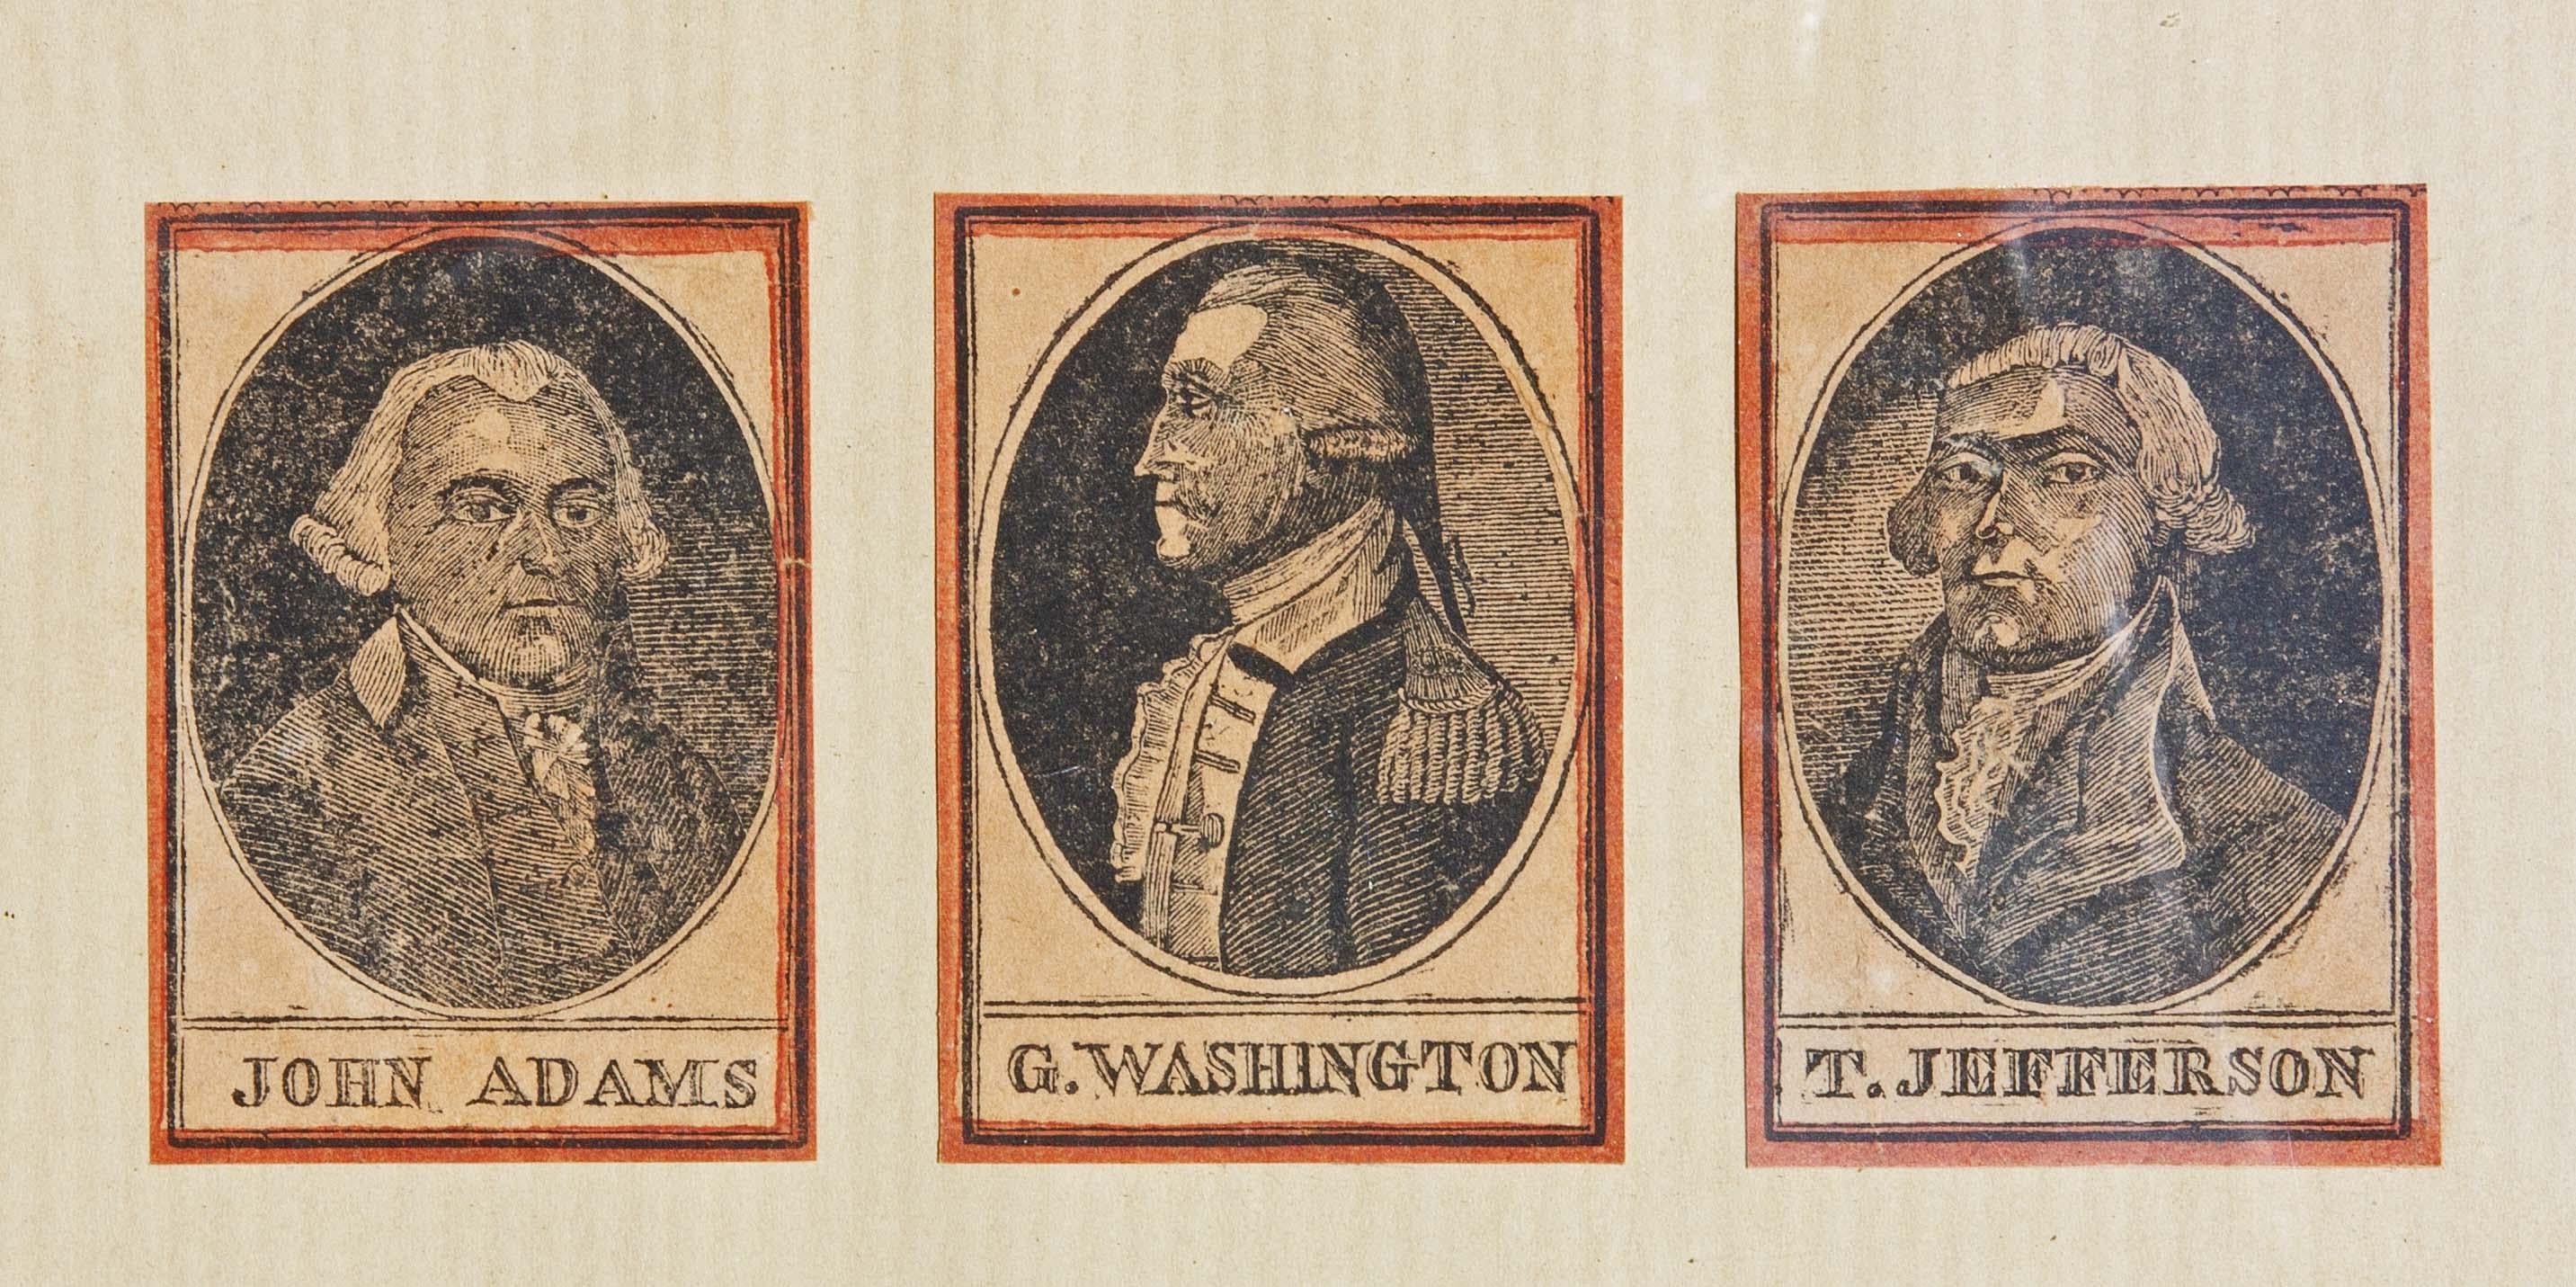 Unknown Portrait Print – Porträtstiche des 18. Jahrhunderts von George Washington Thomas Jefferson 